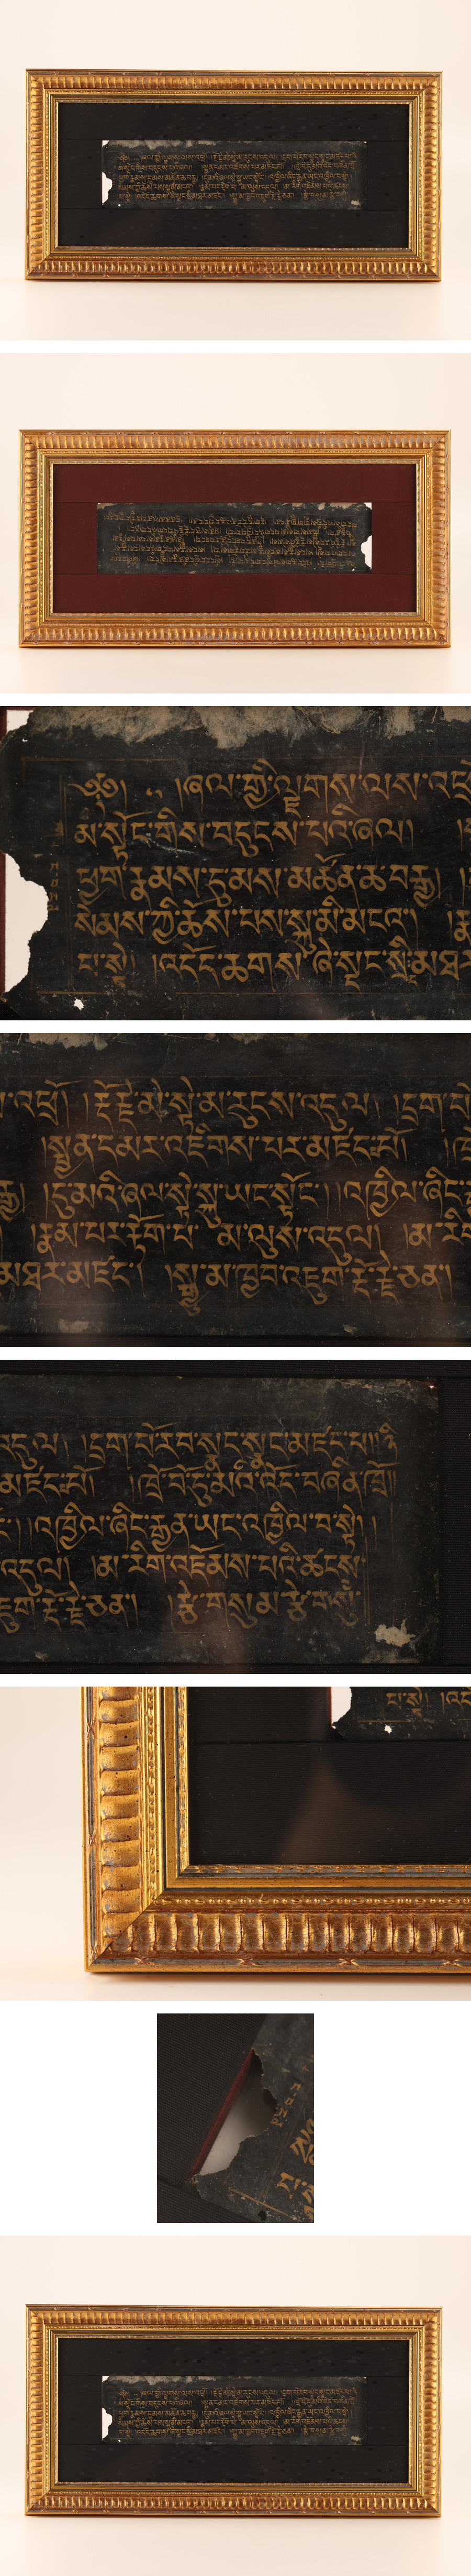 【限定品好評】【琴》送料無料 仏教美術 時代 チベット経典 額装 KH041 その他